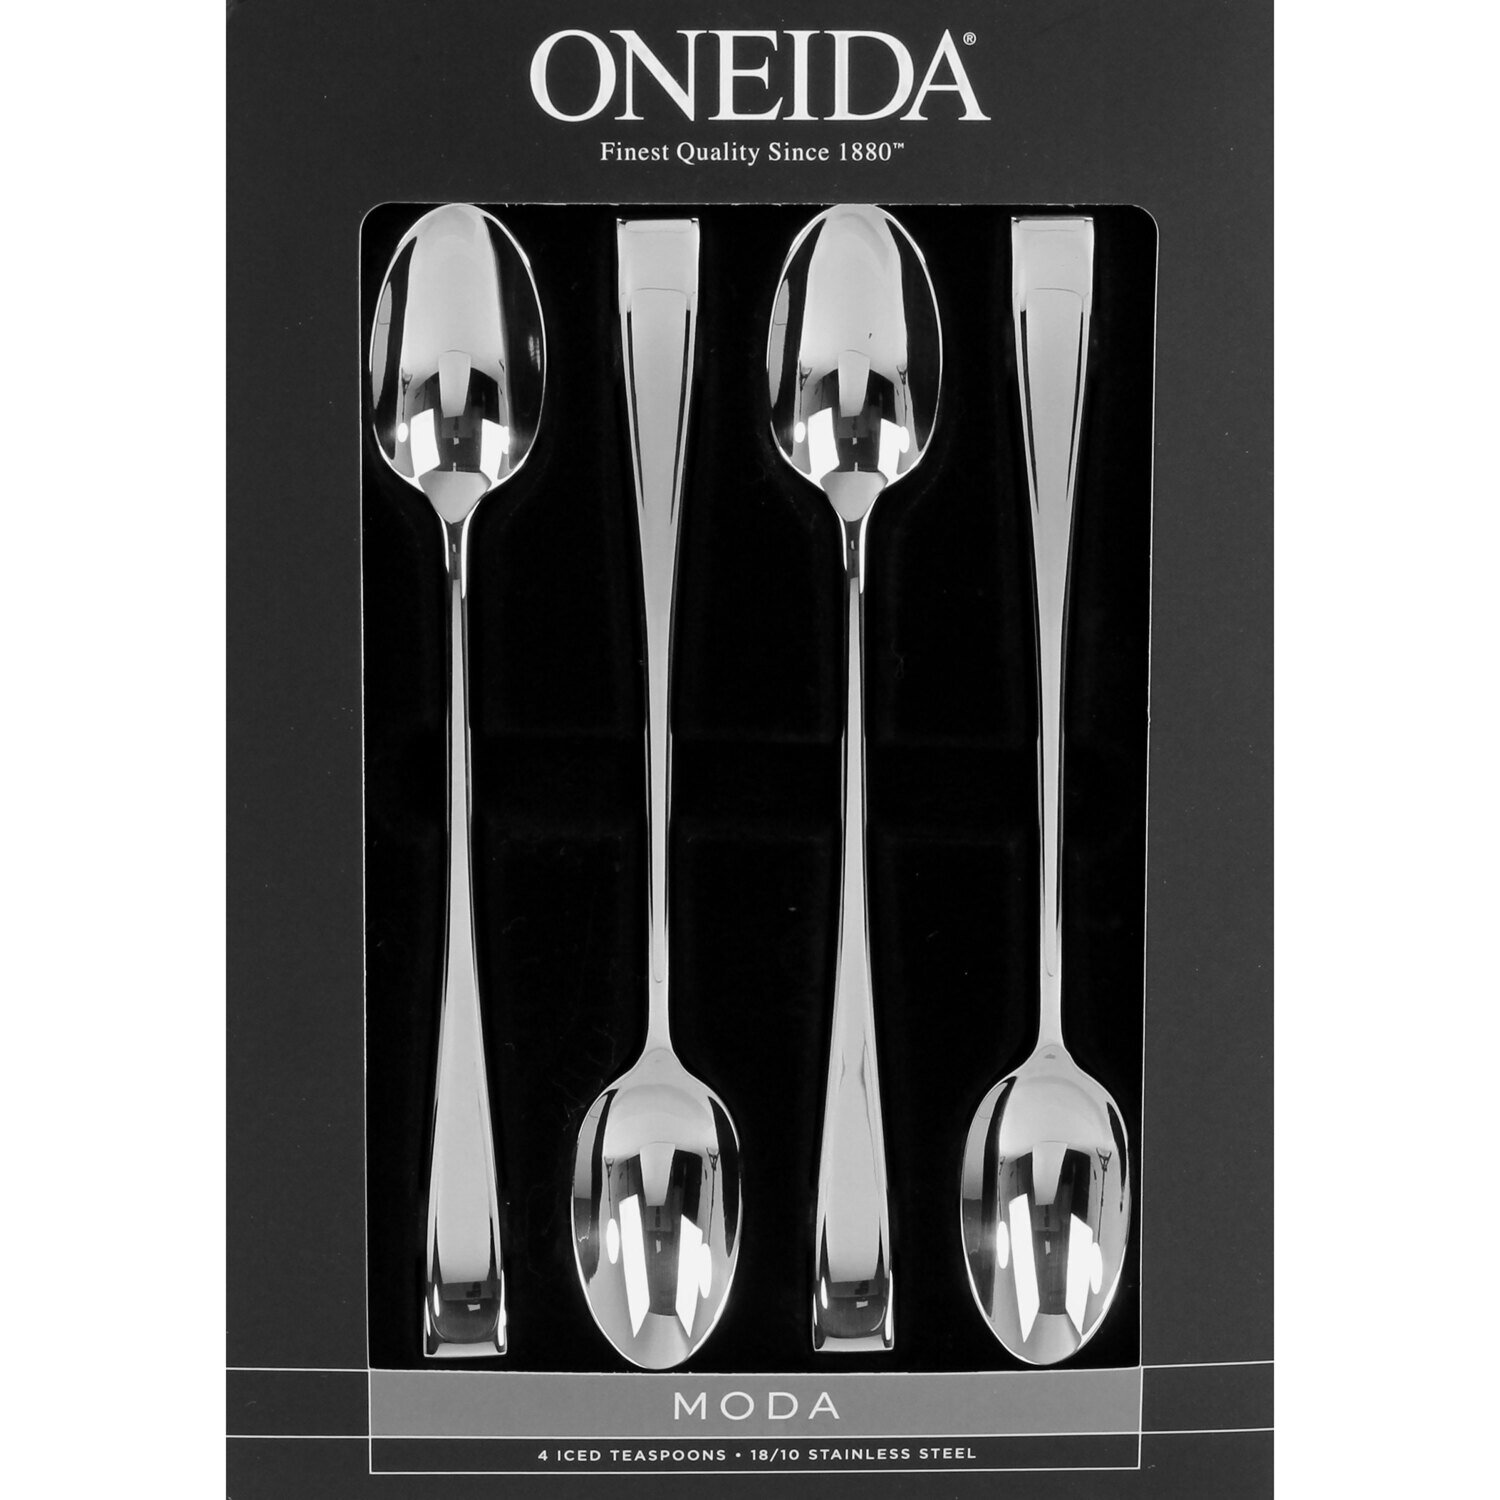 Oneida Moda Set of 4 Iced Teaspoons T711004M